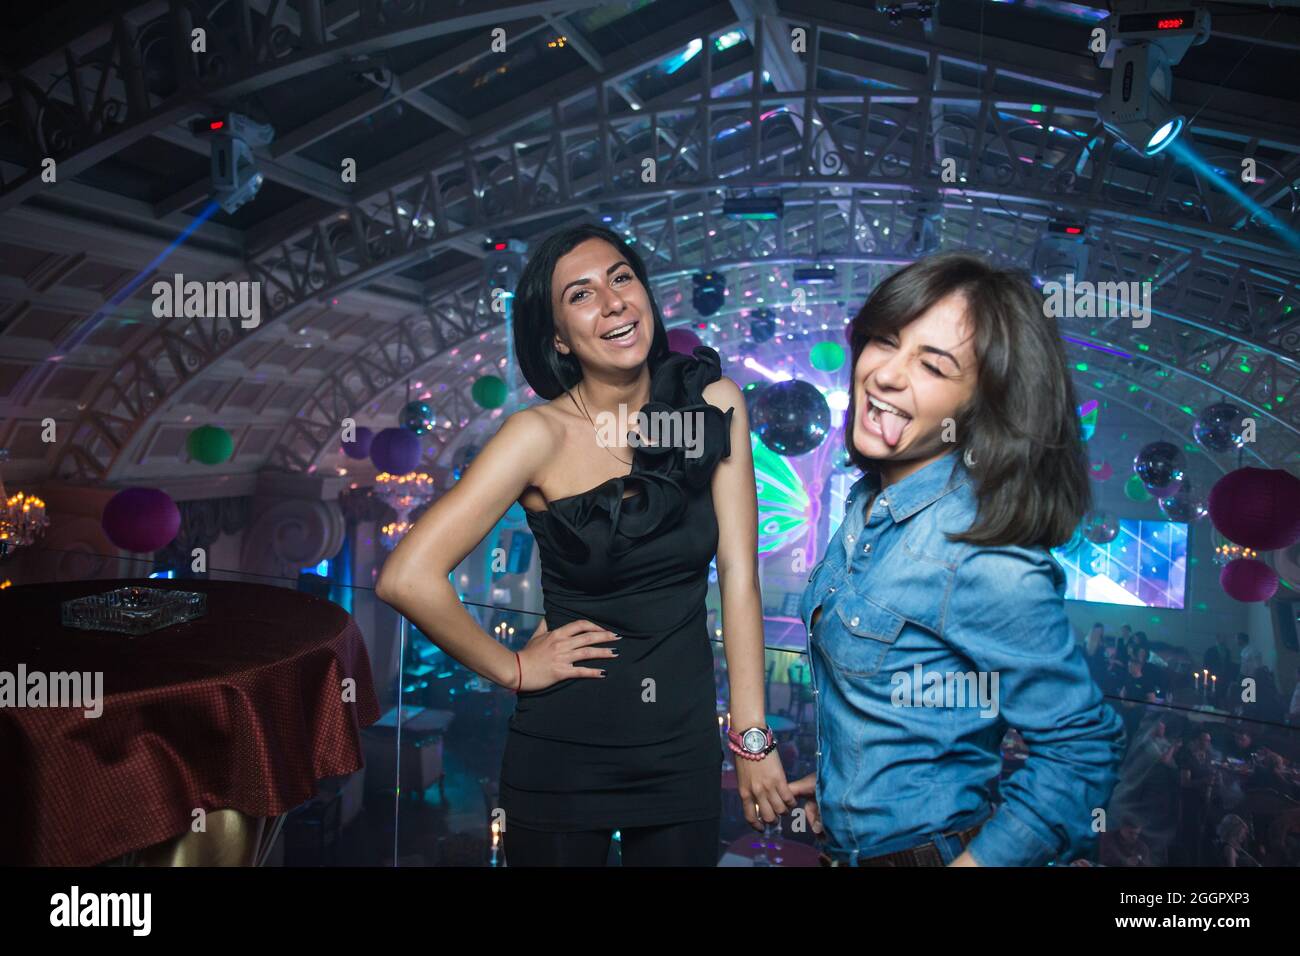 Odessa, Ucraina 26 aprile 2014: Locale notturno Ministerium. Le persone ballano, sorridendo durante il concerto nel night club dj party. L'uomo e la donna si divertono al club. Foto Stock